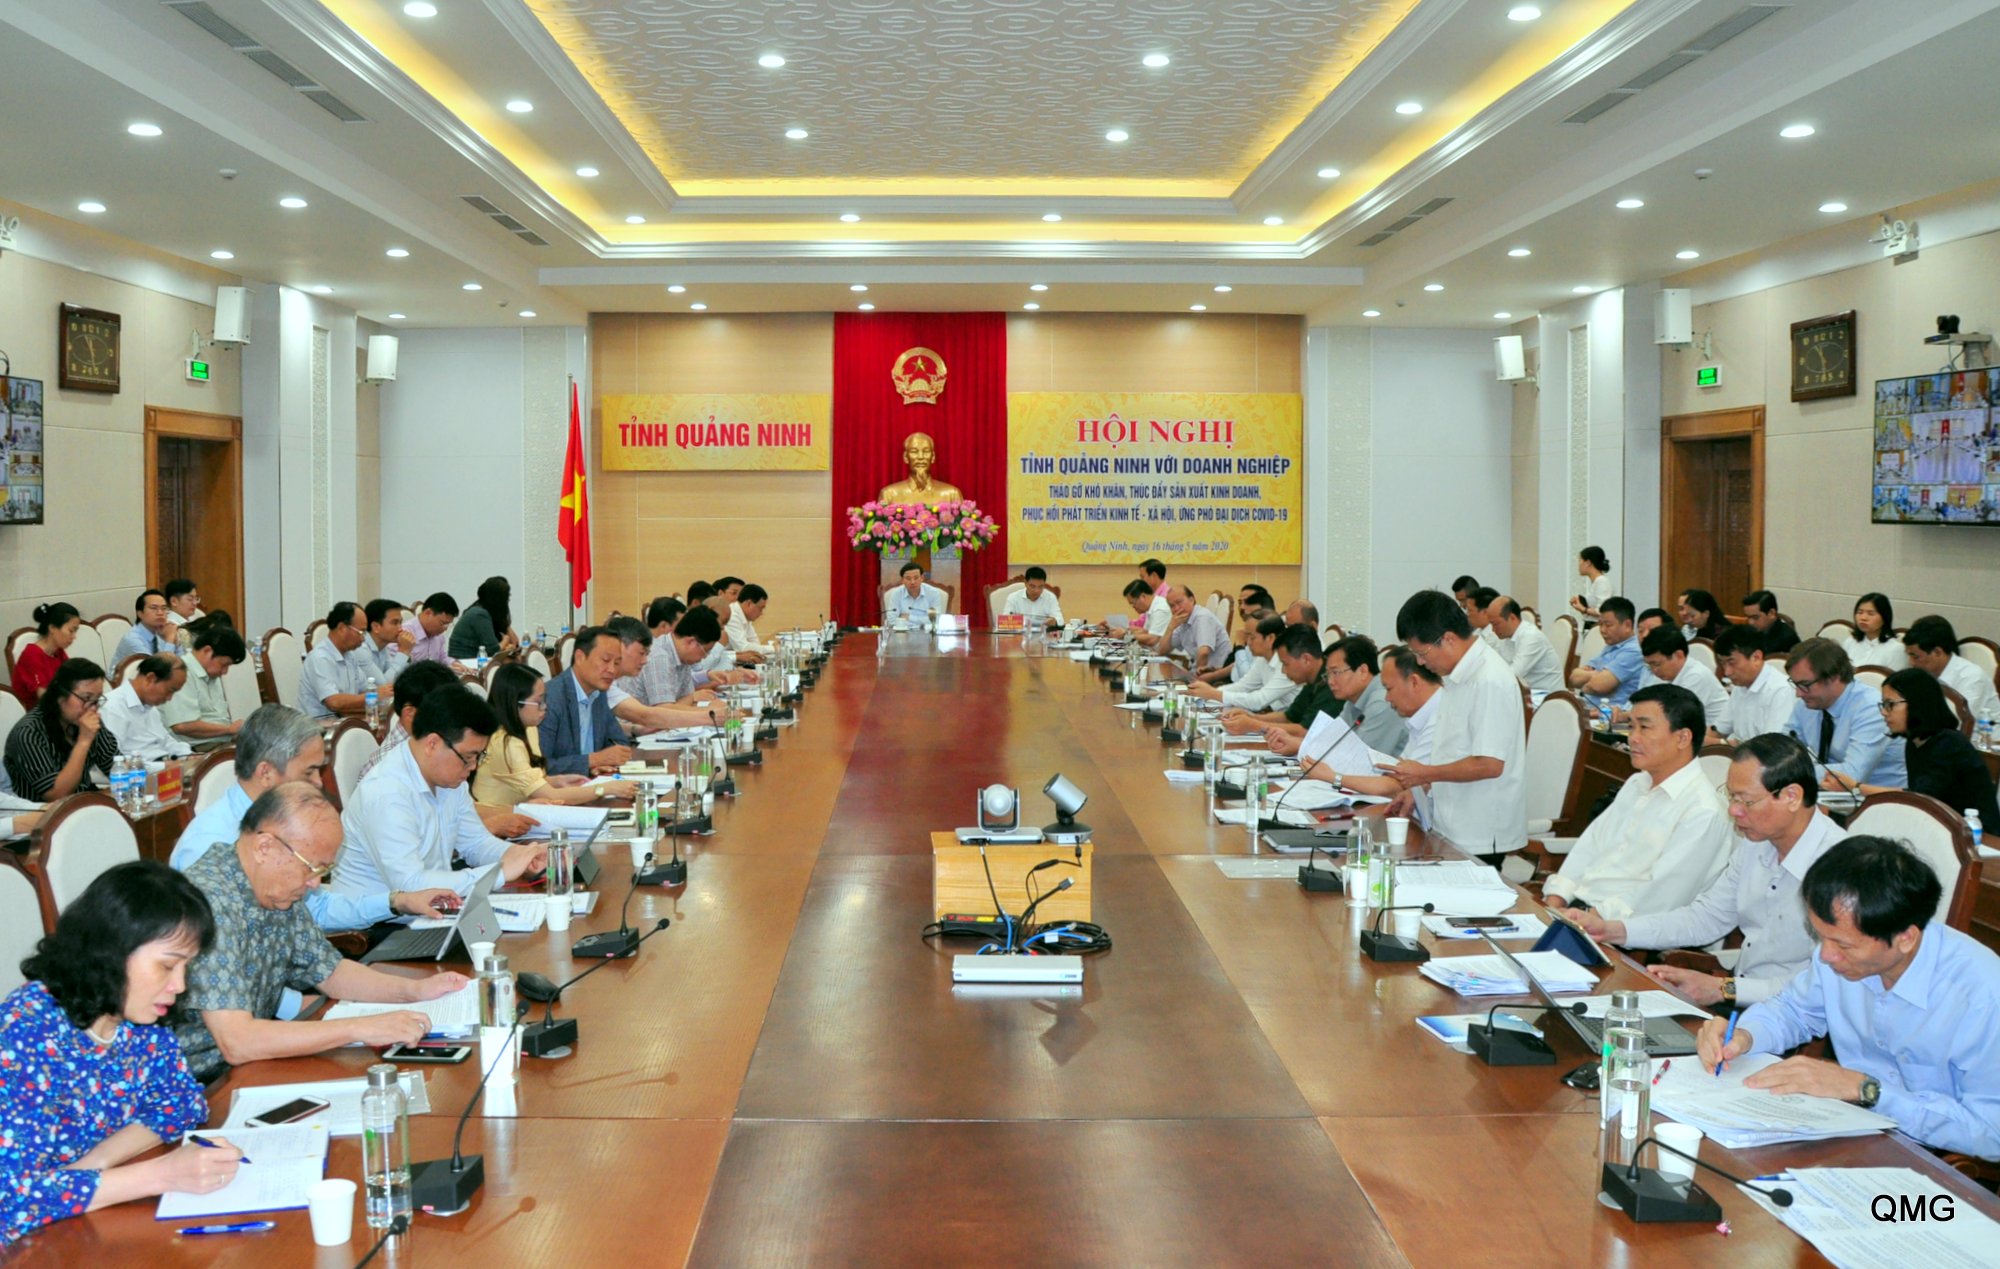 Tỉnh Quảng Ninh tổ chức chương trình tiếp xúc doanh nghiệp, lắng nghe, tháo gỡ khó khăn, bàn giải pháp thúc đẩy tăng trường và phục hồi phát triển 